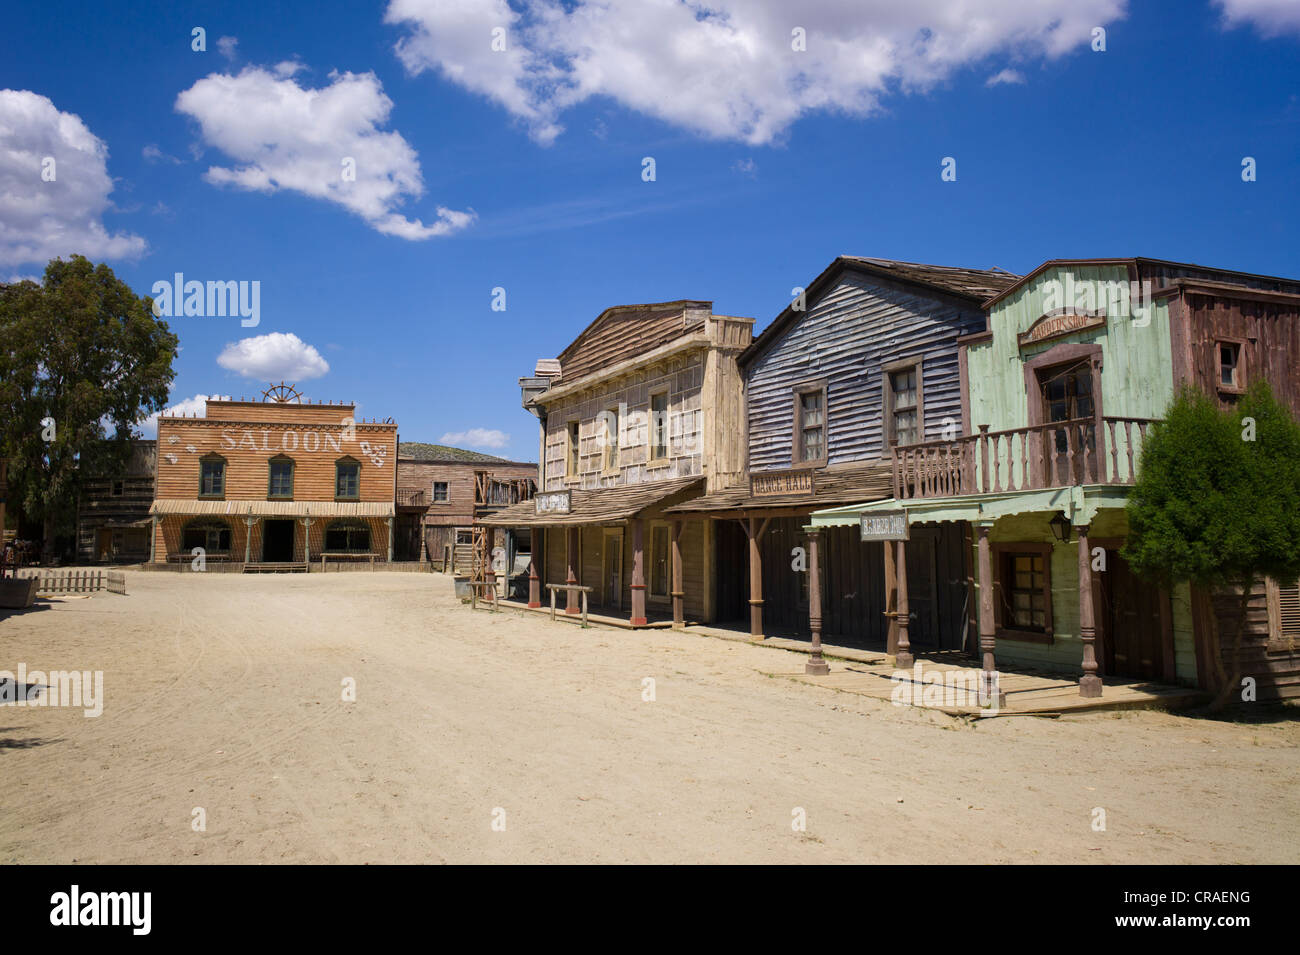 Fort Bravo, ehemalige Film-Set, jetzt eine touristische Attraktion, Westernstadt, Saloon, Tabernas, Andalusien, Spanien, Europa Stockfoto